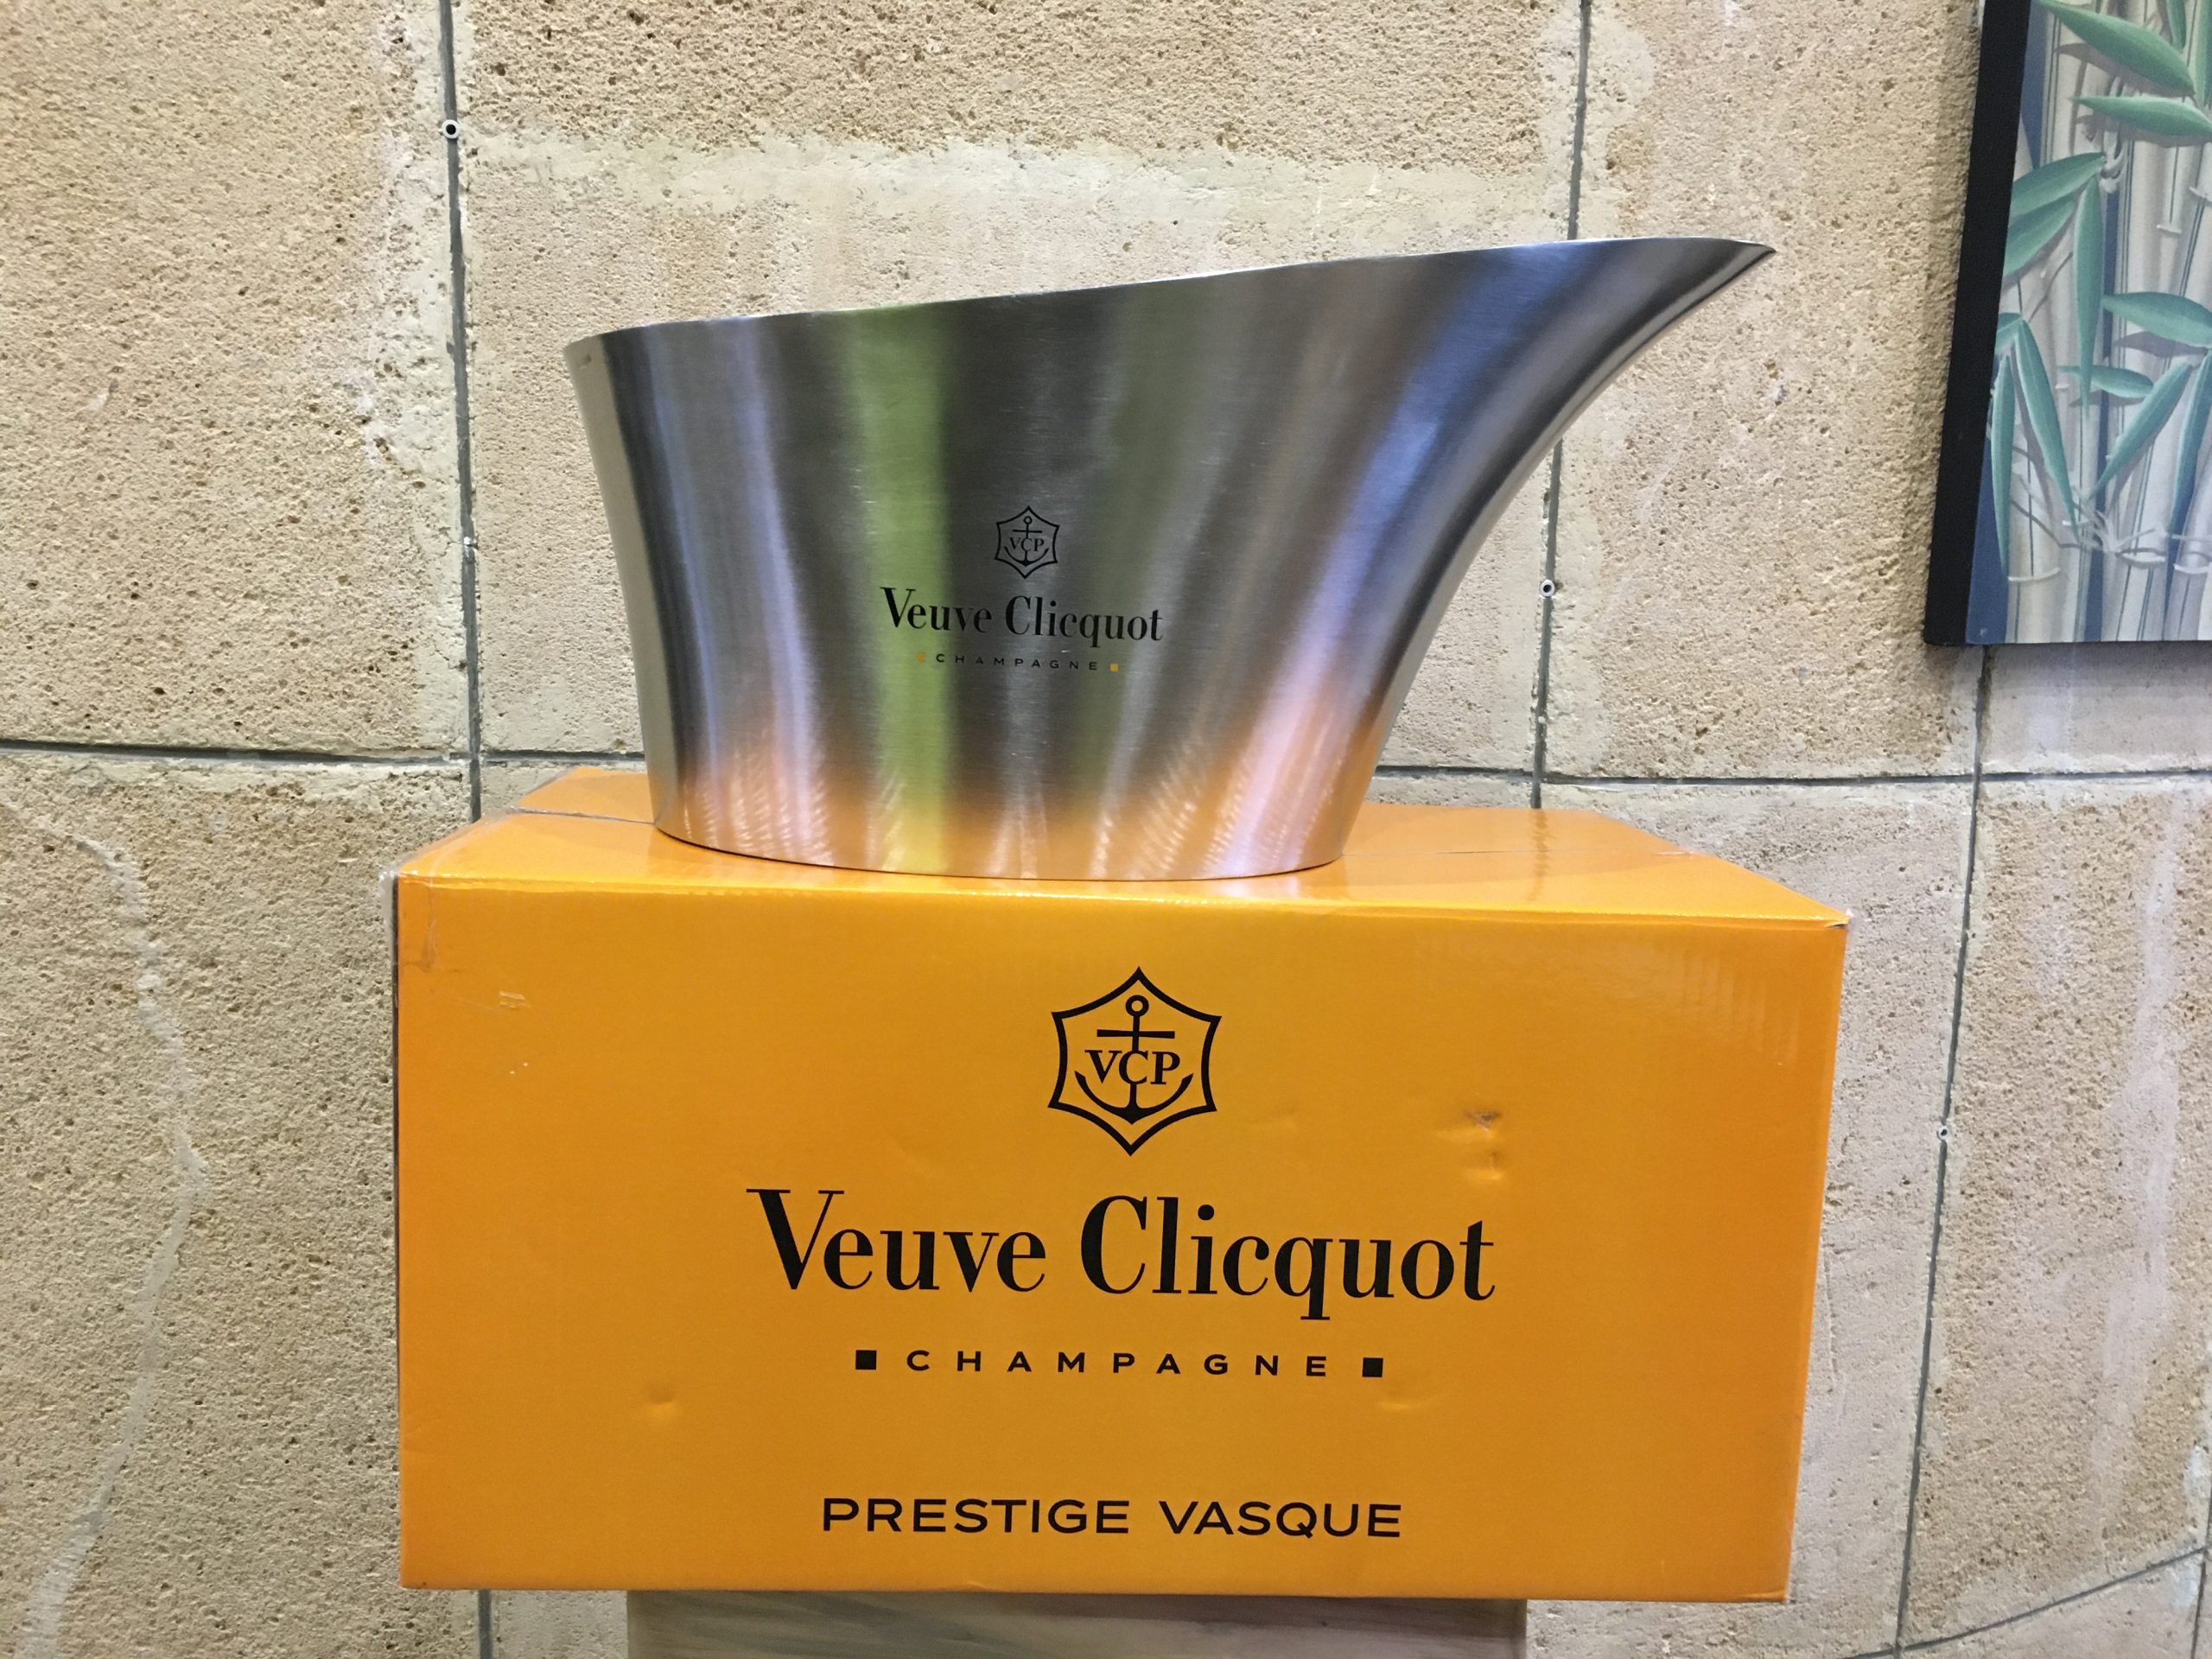 Veuve Clicquot Champagne Prestige Vasque fém pezsgős jégkád – 146.800.-Ft